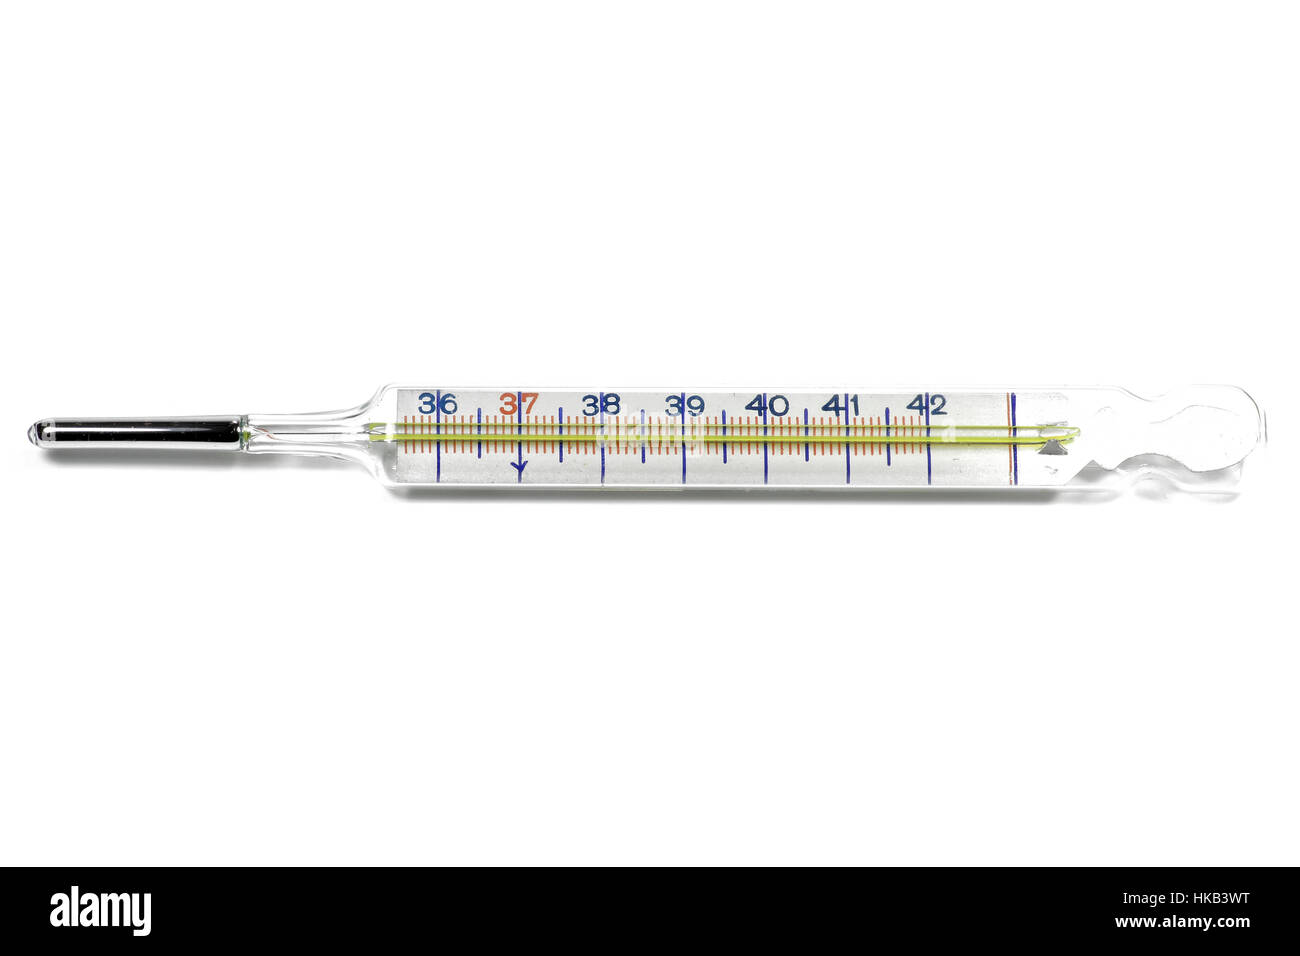 medizinische Quecksilber-Thermometer isoliert auf weißem Hintergrund Stockfoto